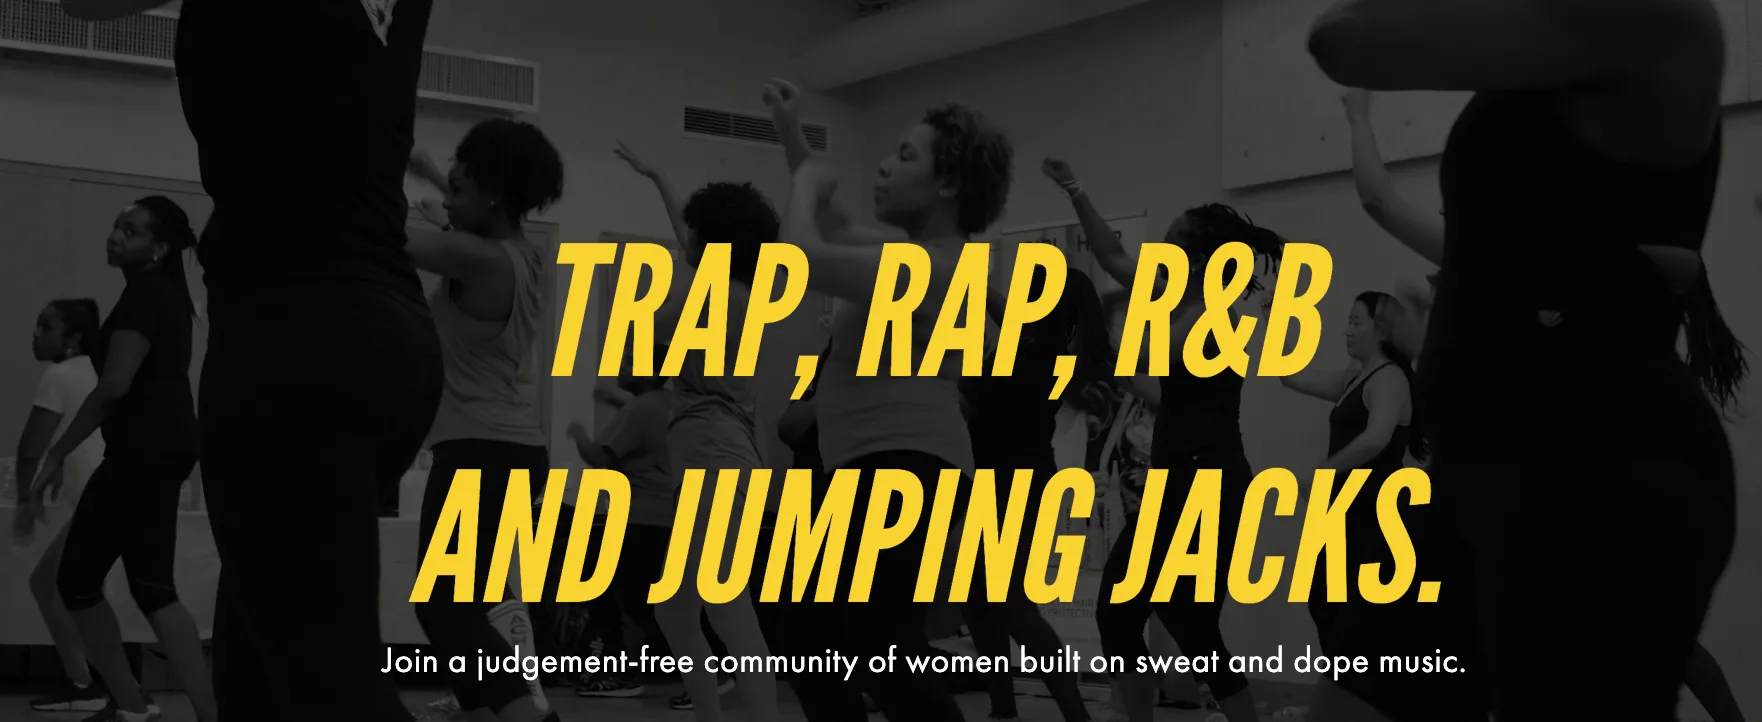 Trap, Rap and Jumping Jacks. 